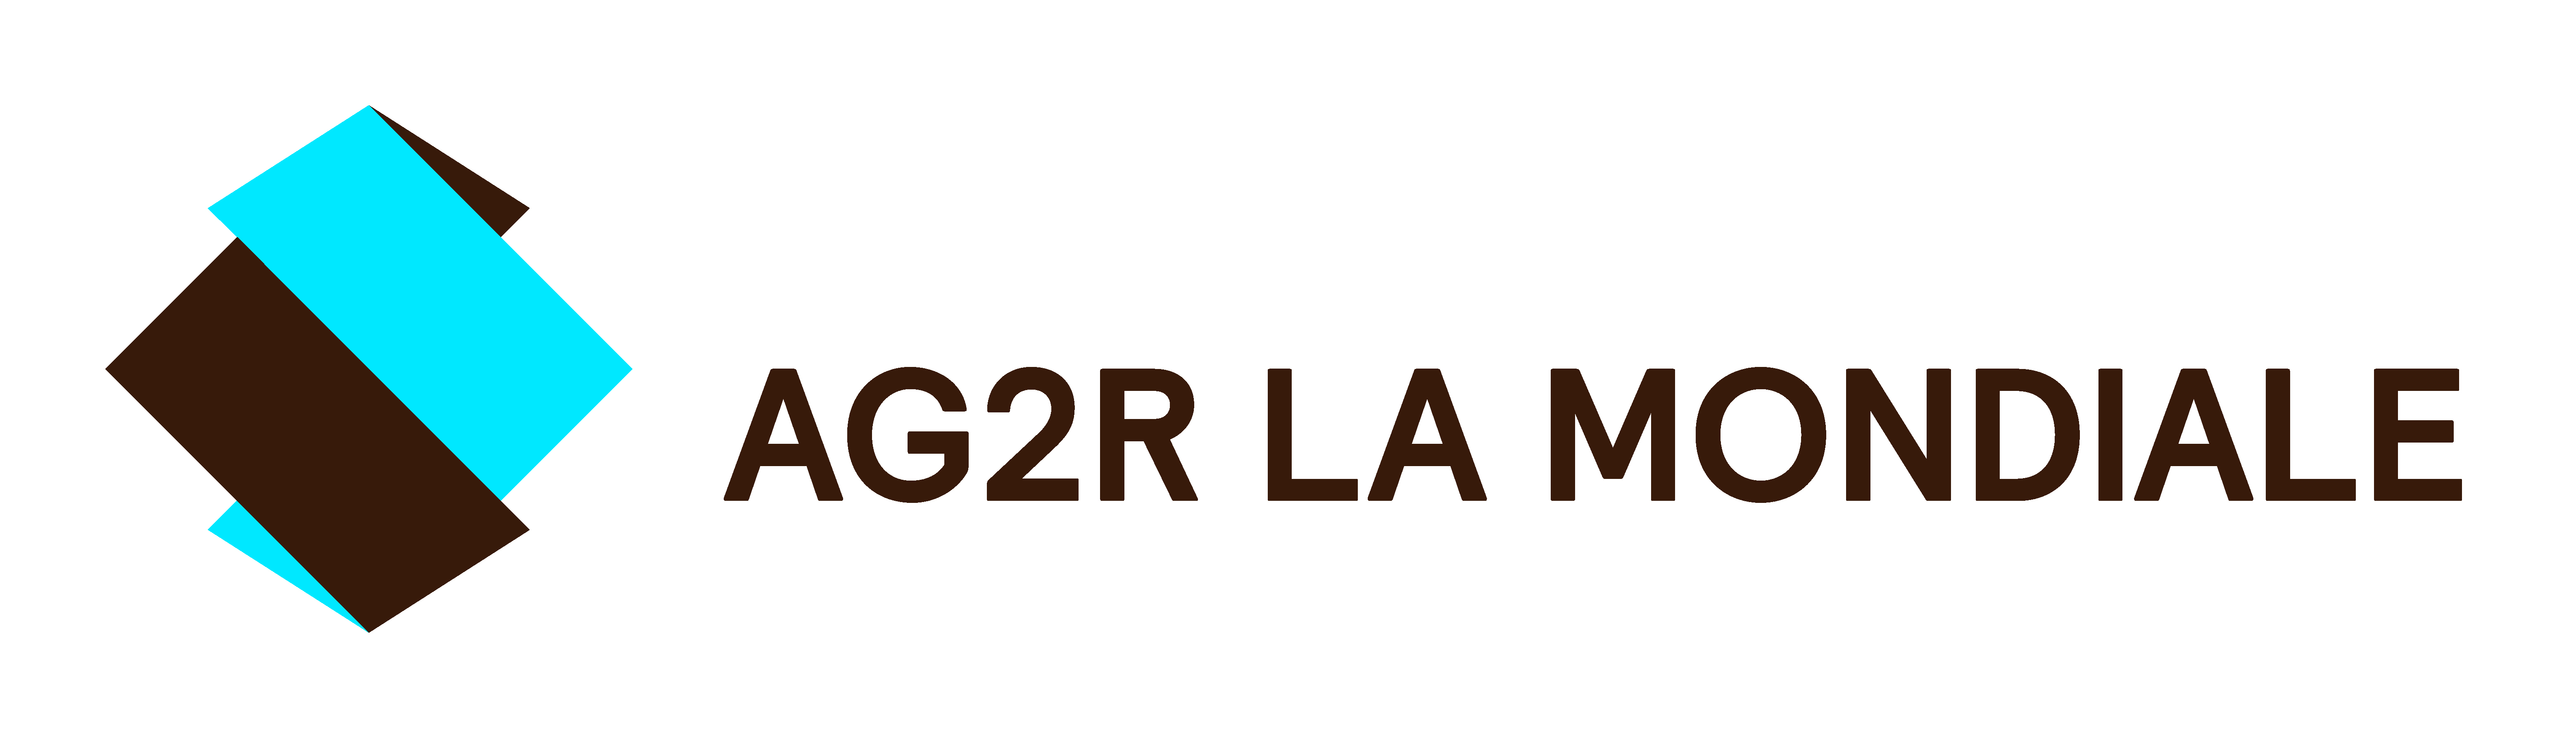 <img alt="" src="/user/pages/02.notre-accompagnement/03.pour-les-collectivites-locales/regions-est/03._gridlogo/Logo AG2R LA MONDIALE.jpeg?alt" />